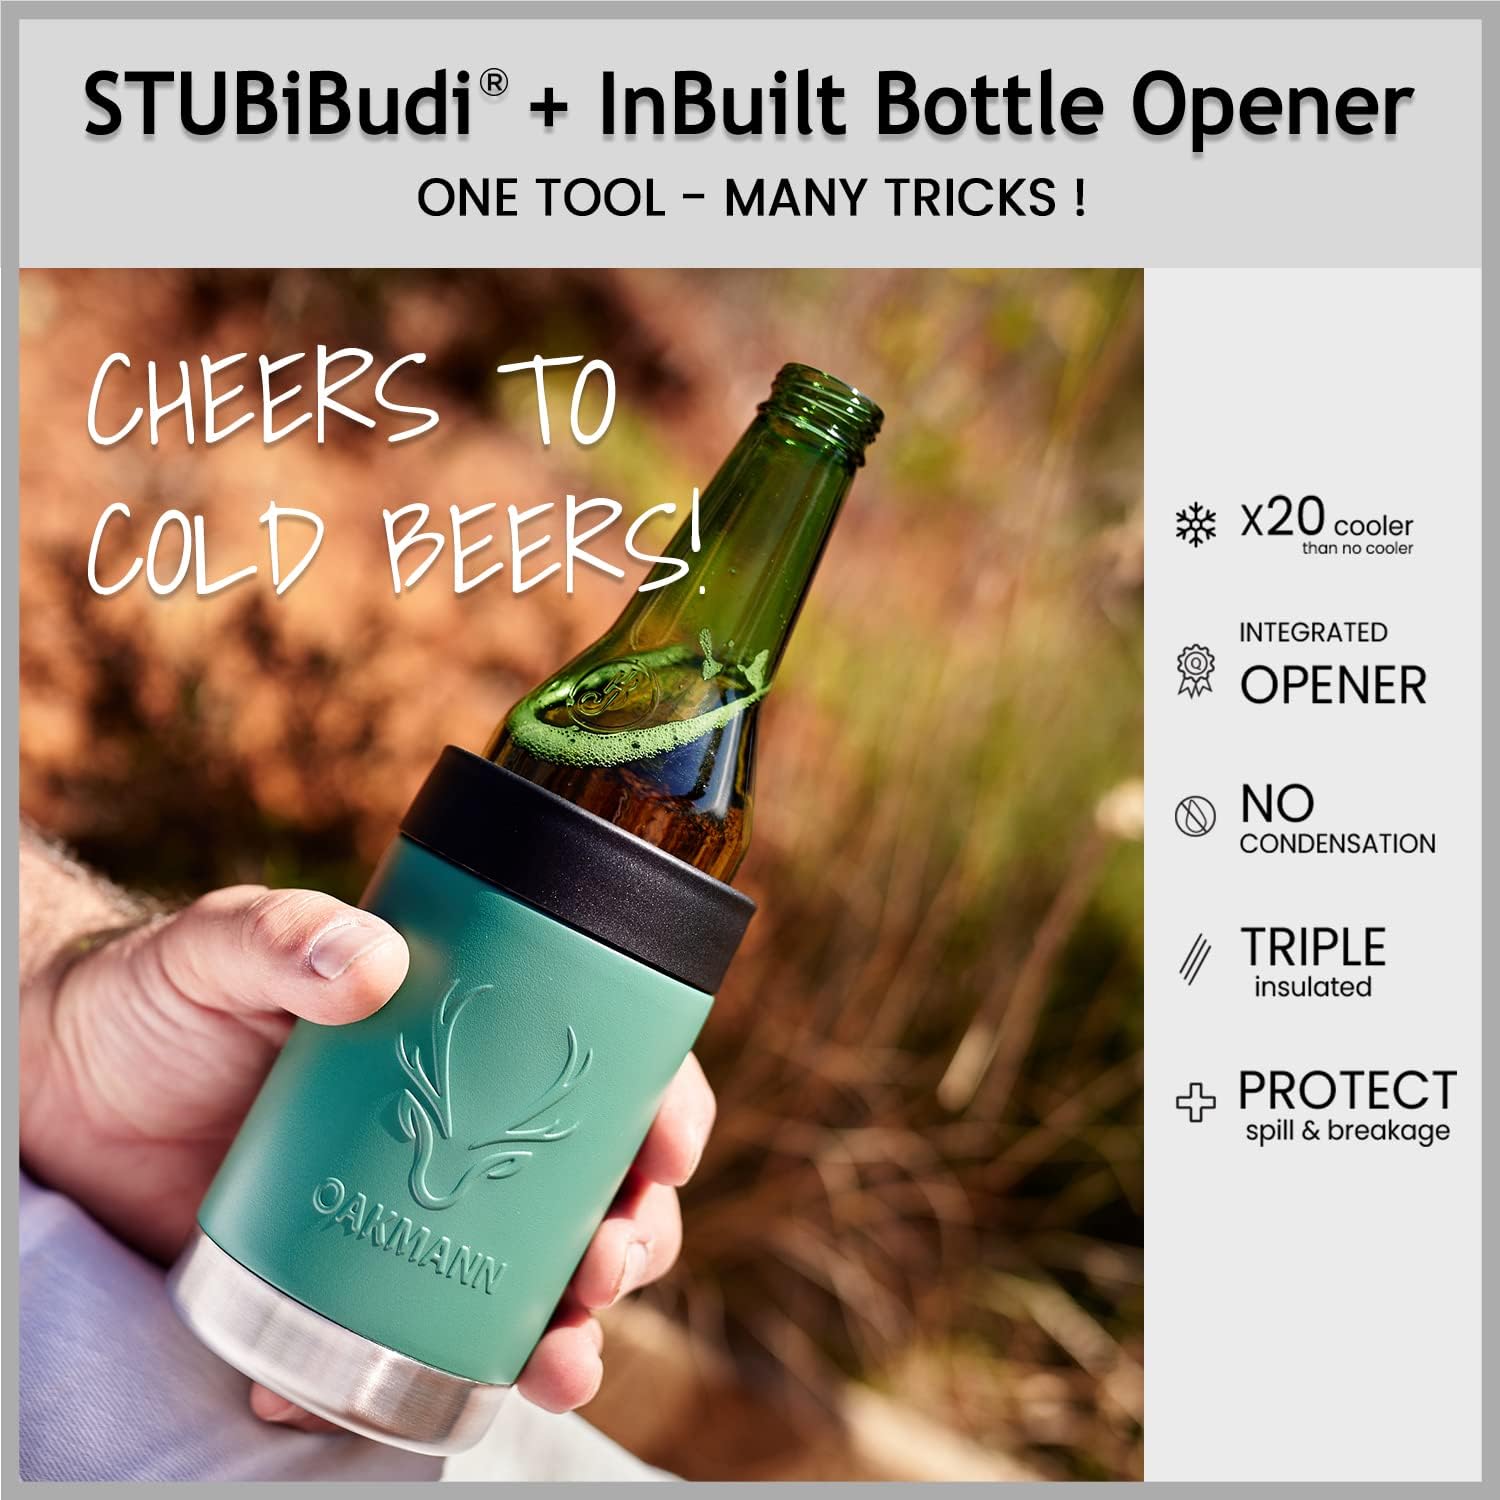 STUBiBudi 12oz Beer Cooler for Bottles and Cans with Bottle Opener (Green)